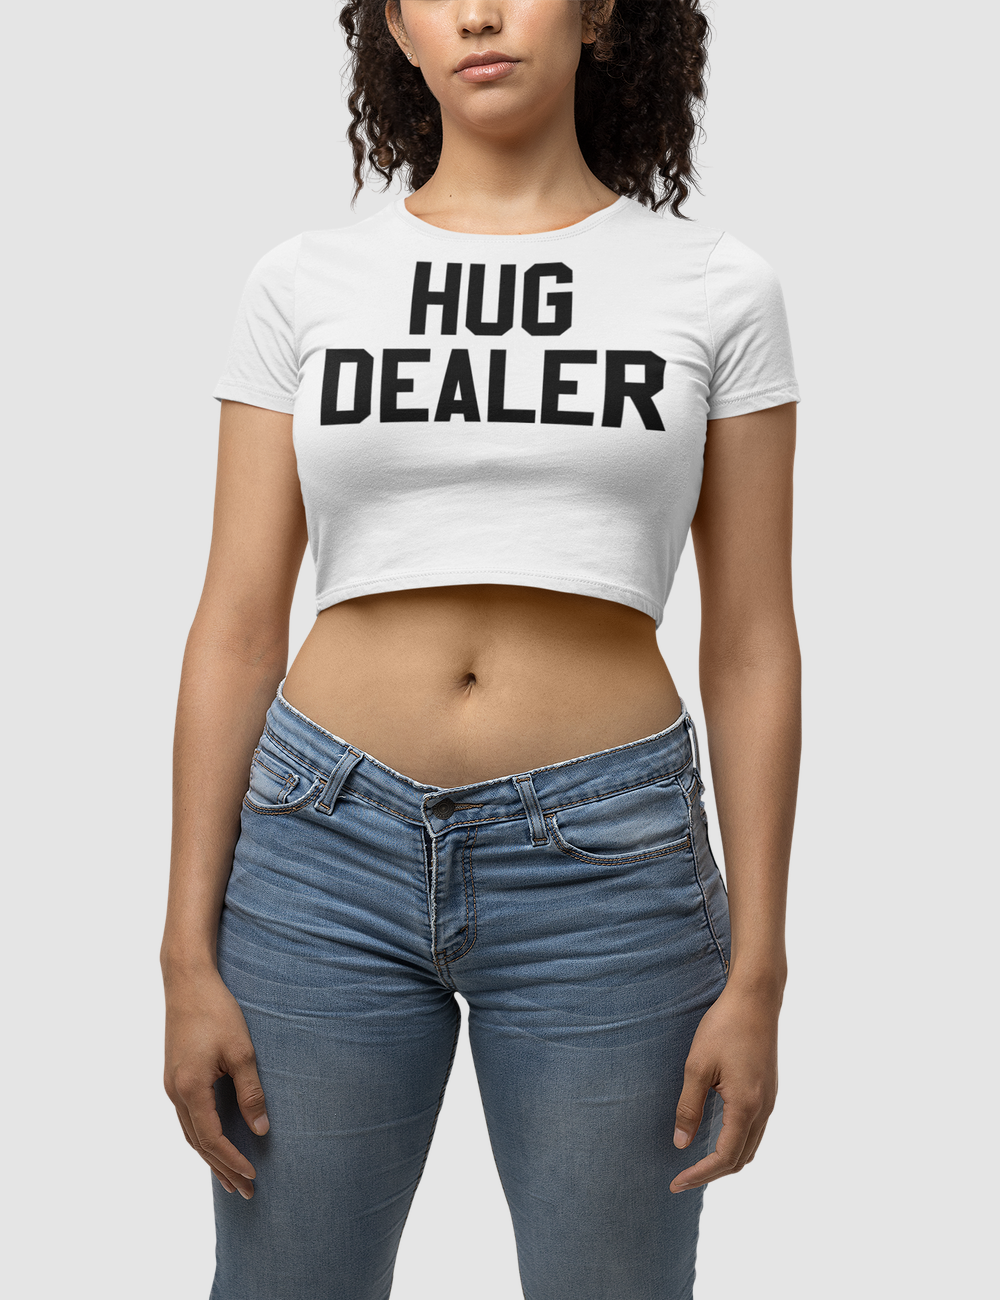 Hug Dealer Women's Fitted Crop Top T-Shirt OniTakai